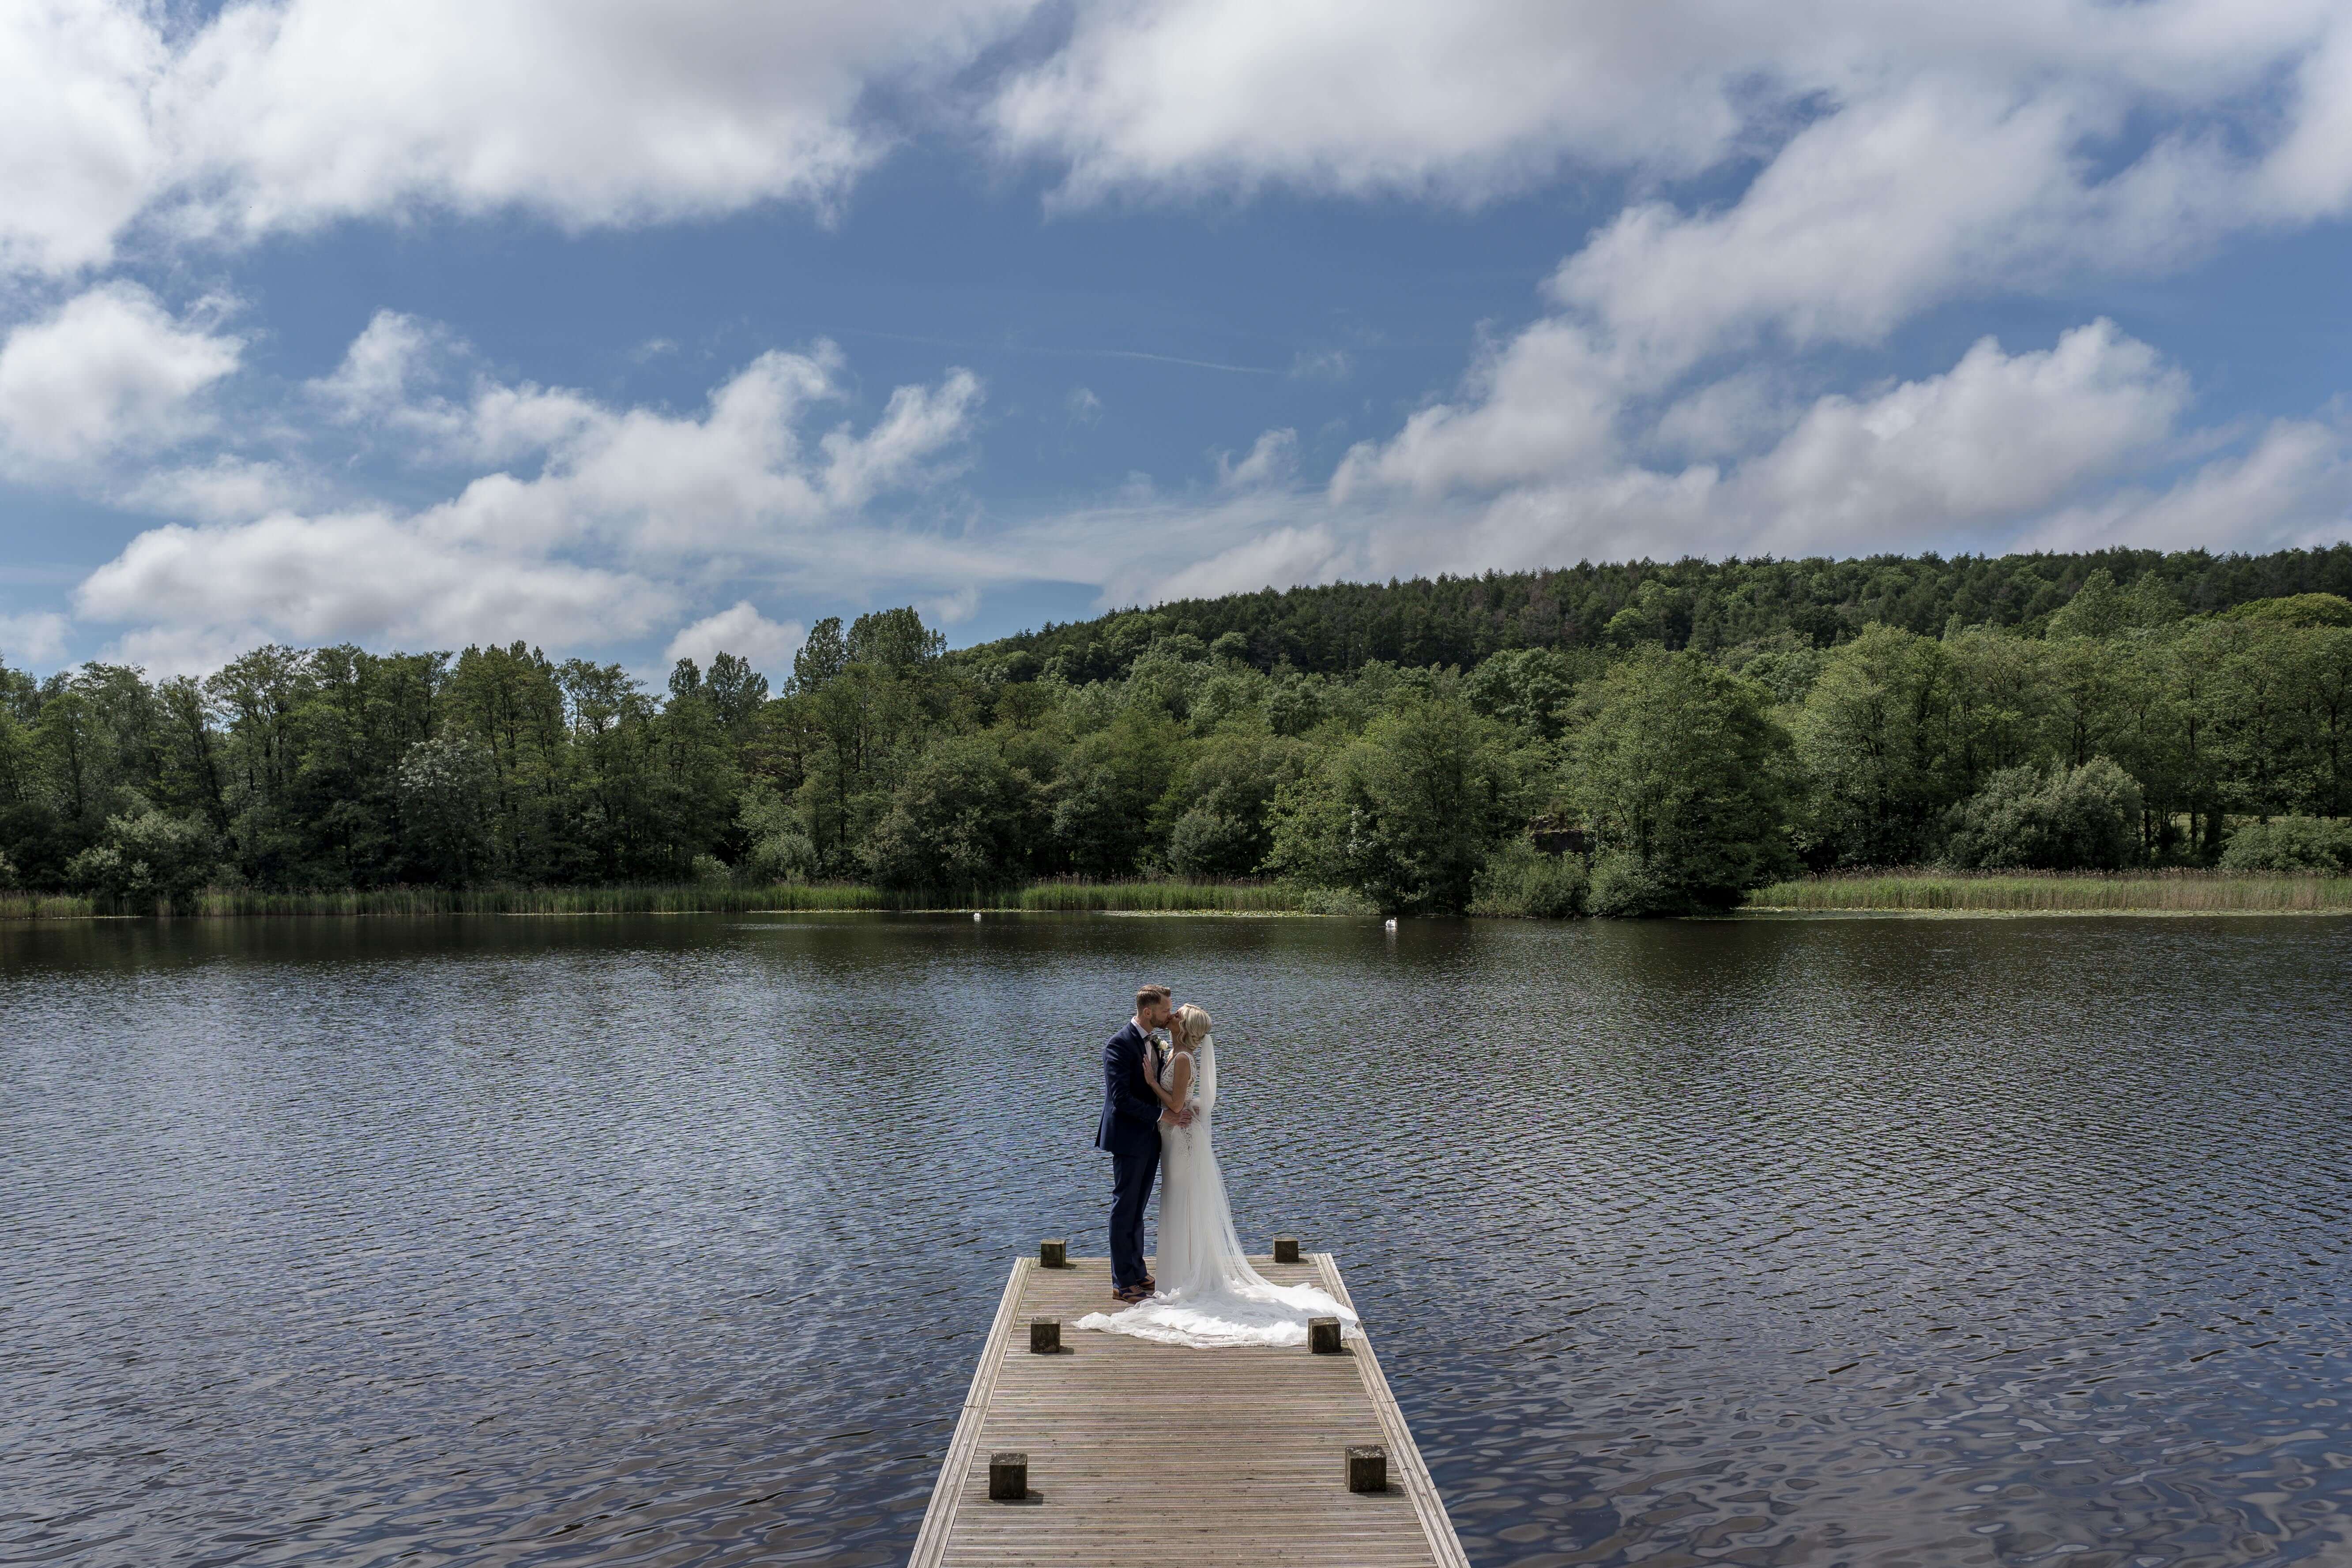 Bride and Groom at lake